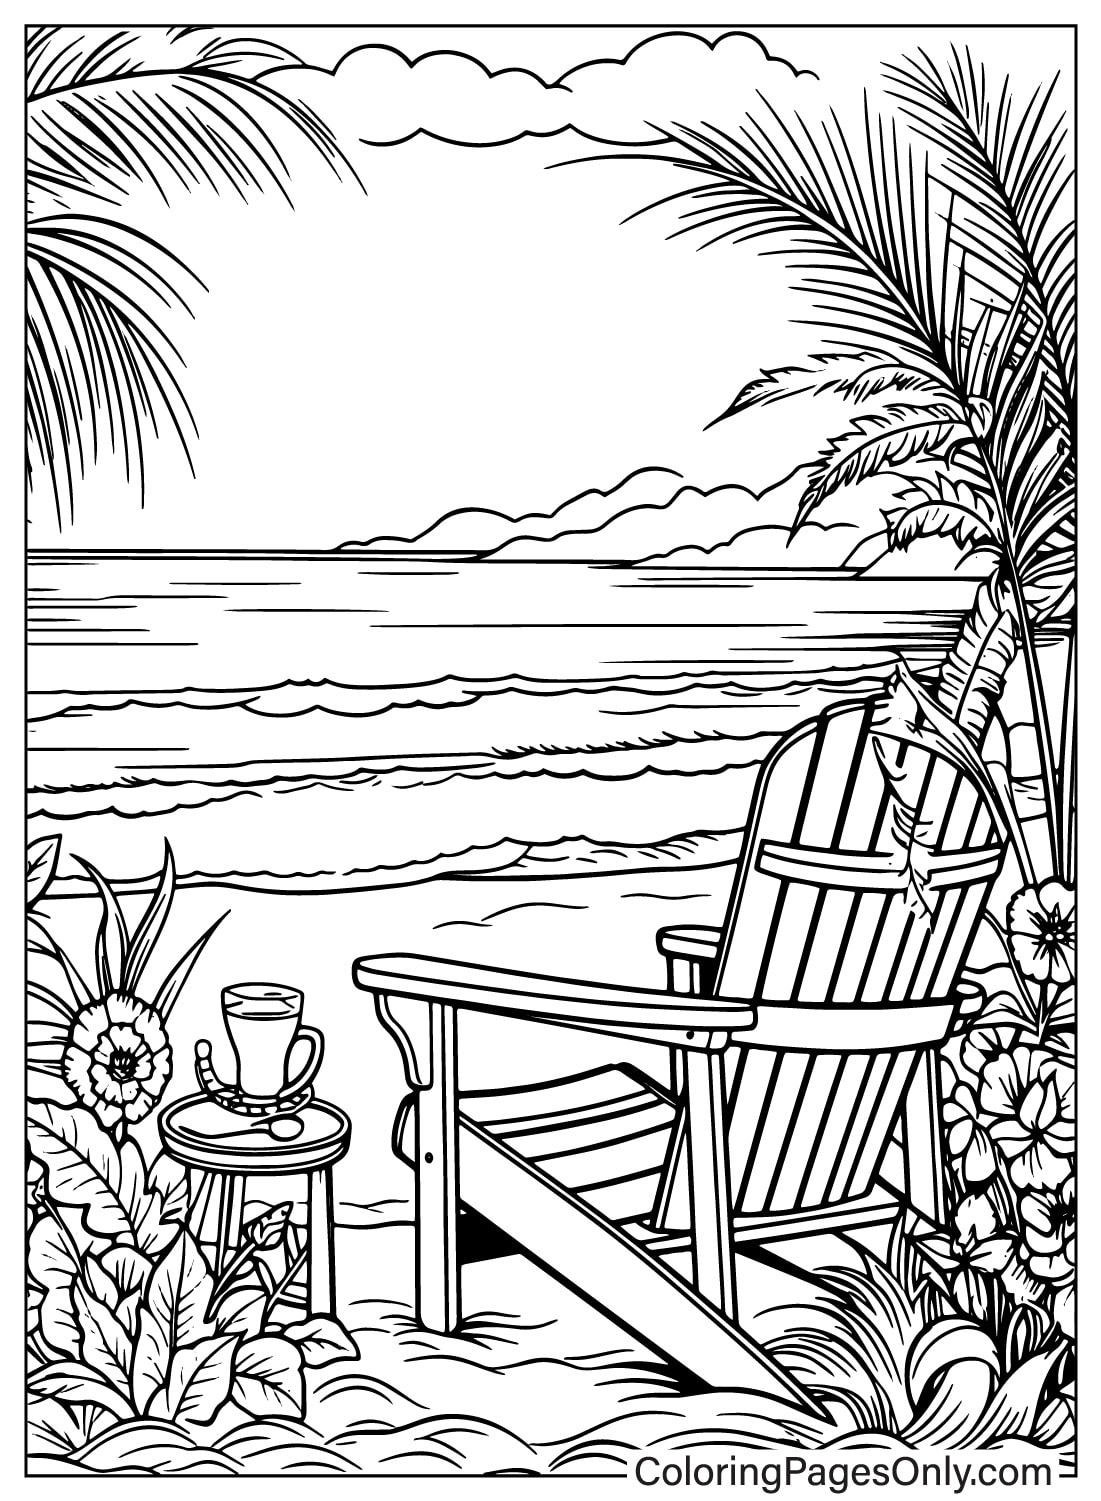 Un dessin d'une scène de plage avec une chaise et des palmiers depuis la plage